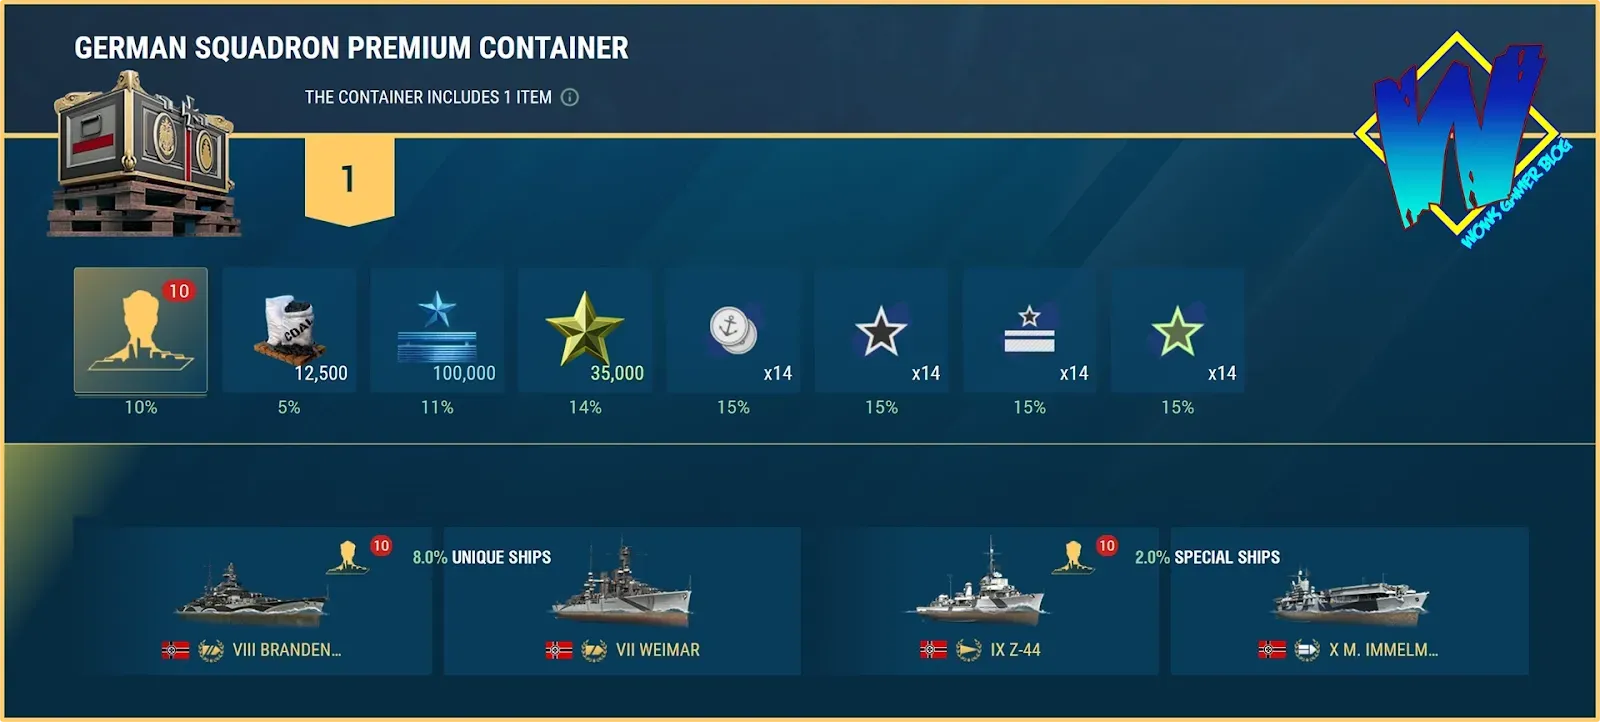 Image of German Squadron Premium Container